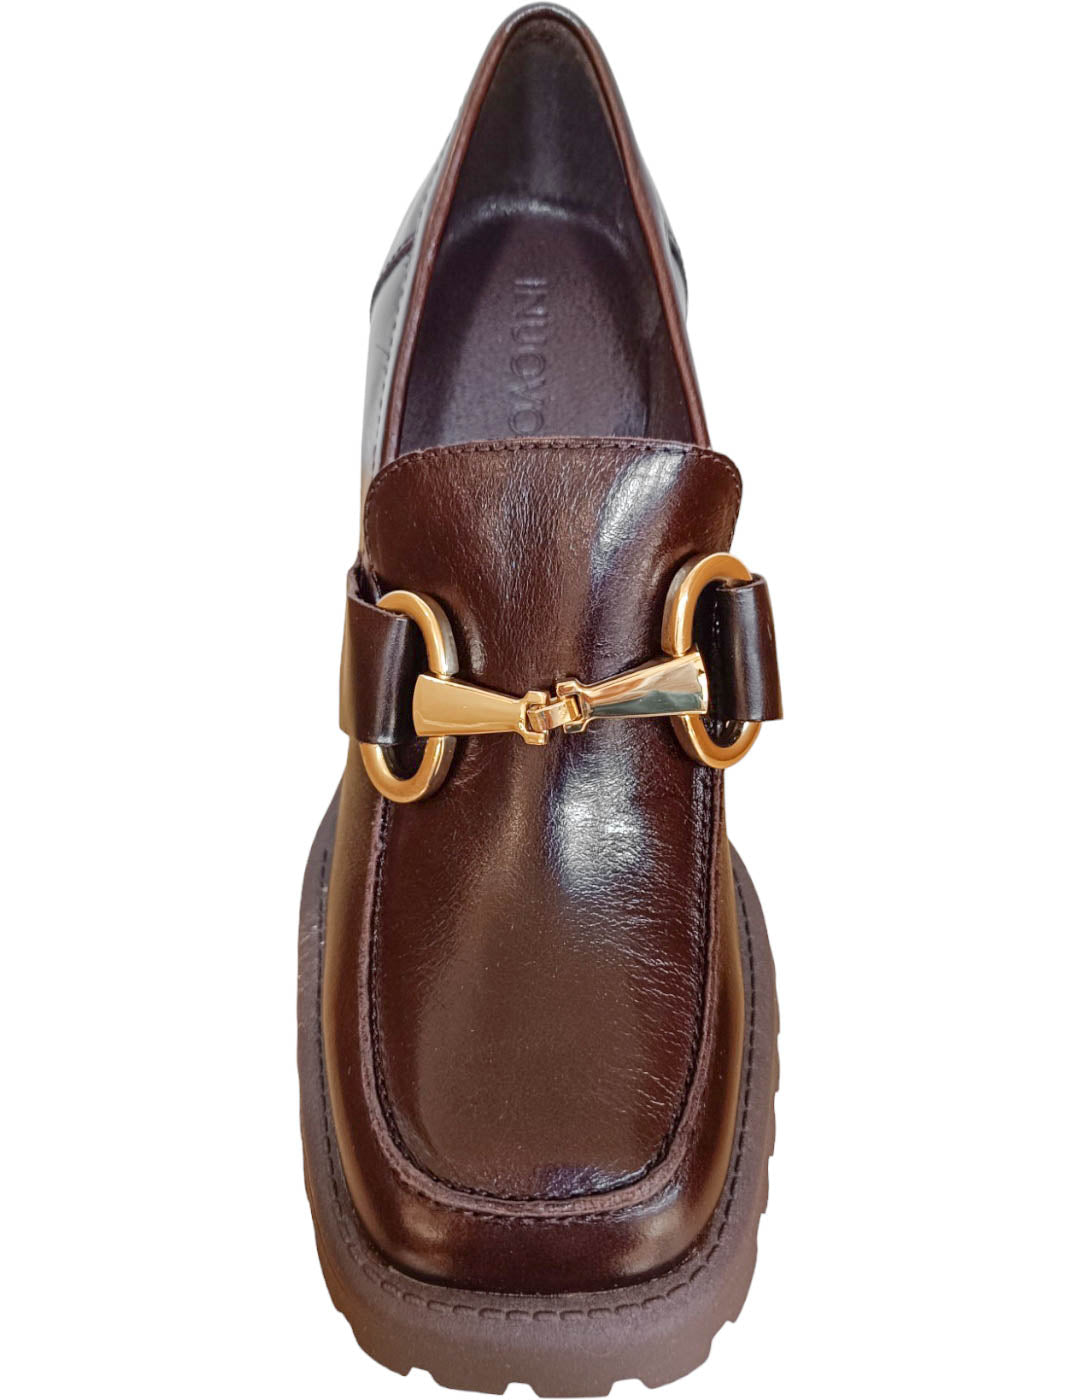 Zapato mocasín 29005 inuovo marrón